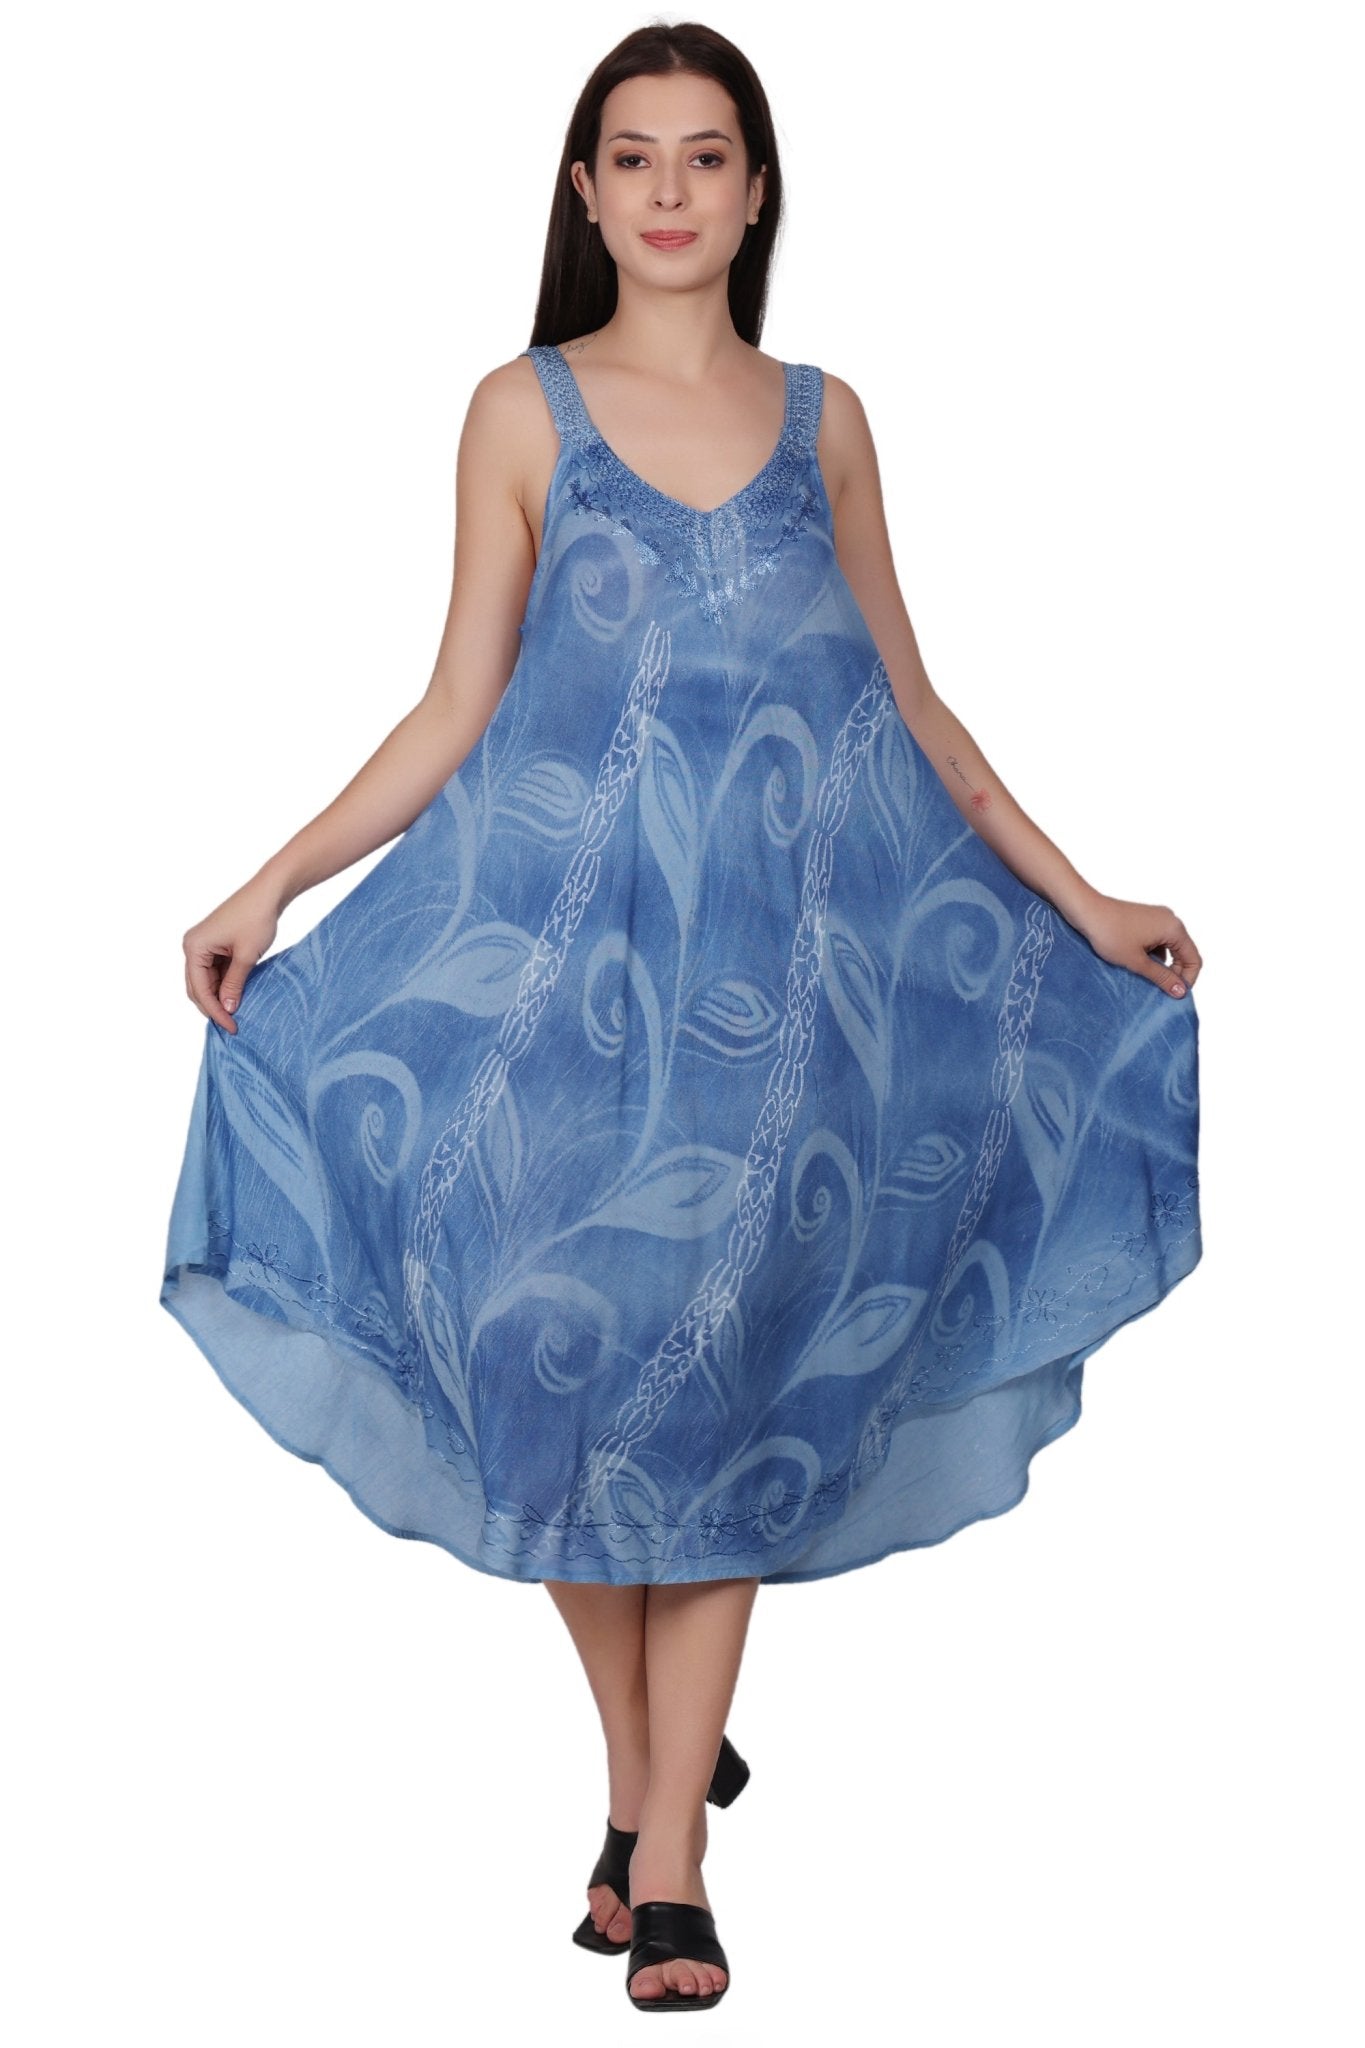 V-Neck Floral Tie Dye Beach Dress 482154-V - Advance Apparels Inc